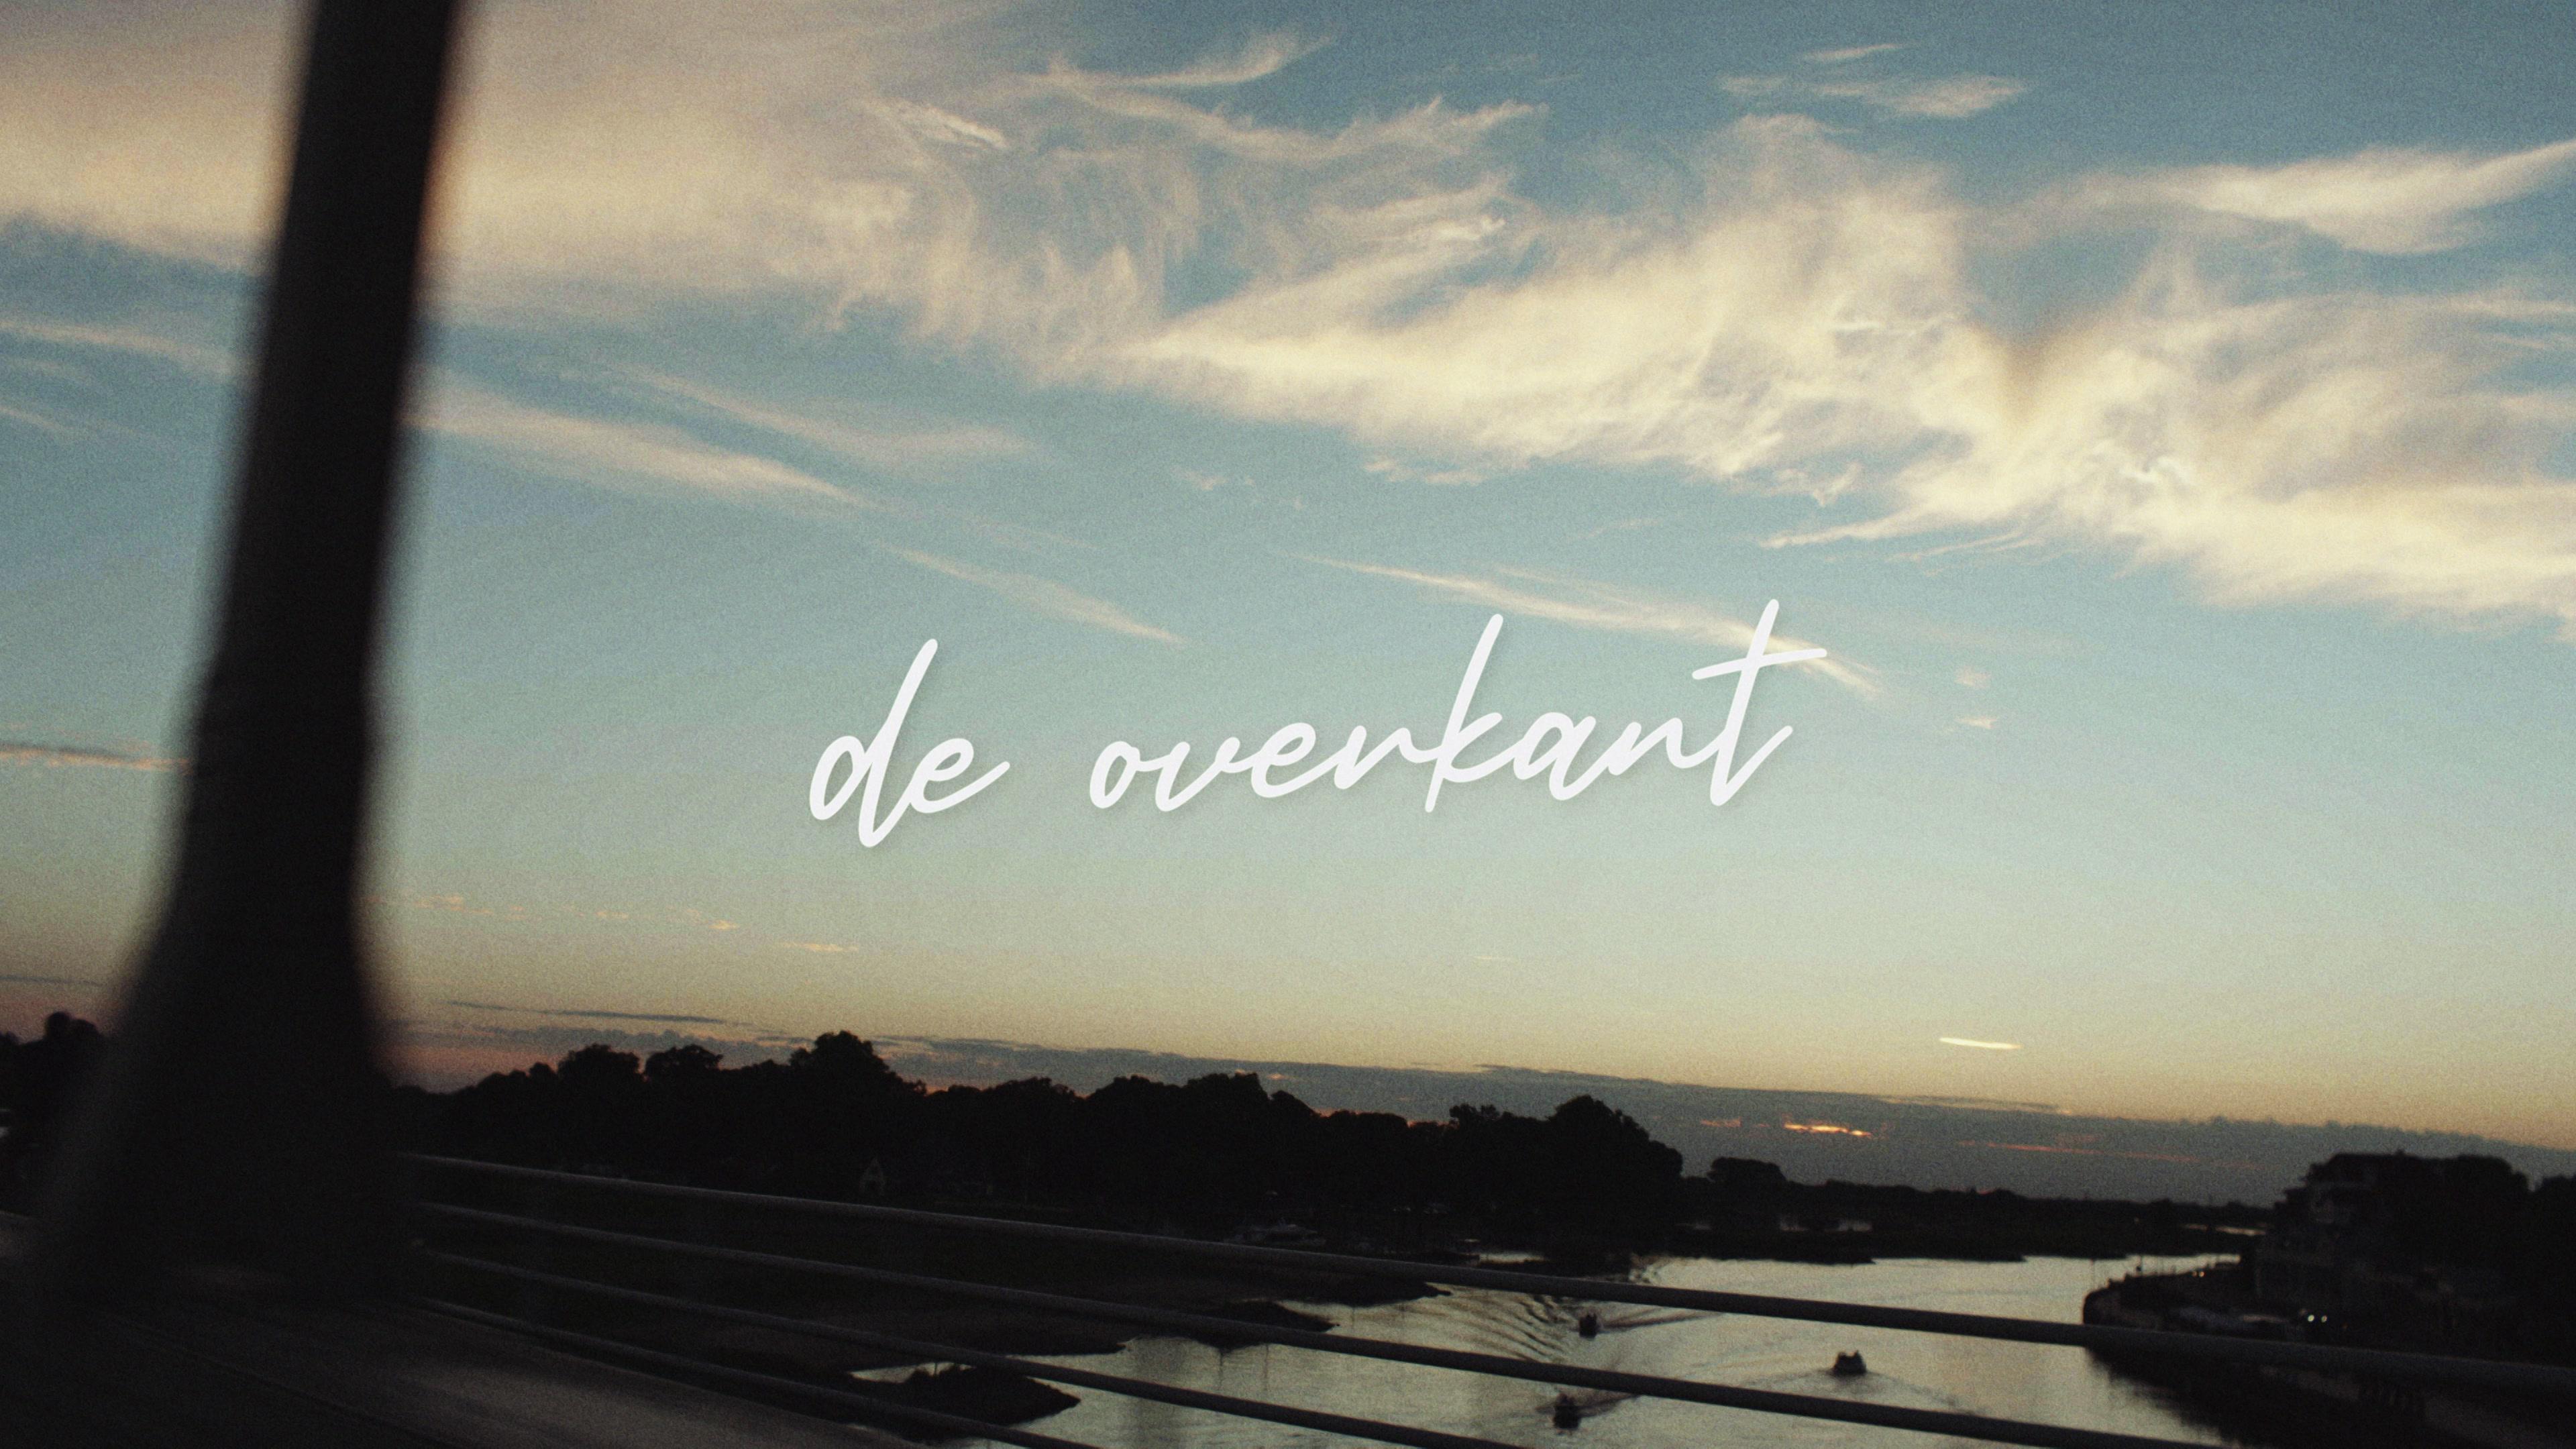 Suzan & Freek - De Overkant (Officiële Video)